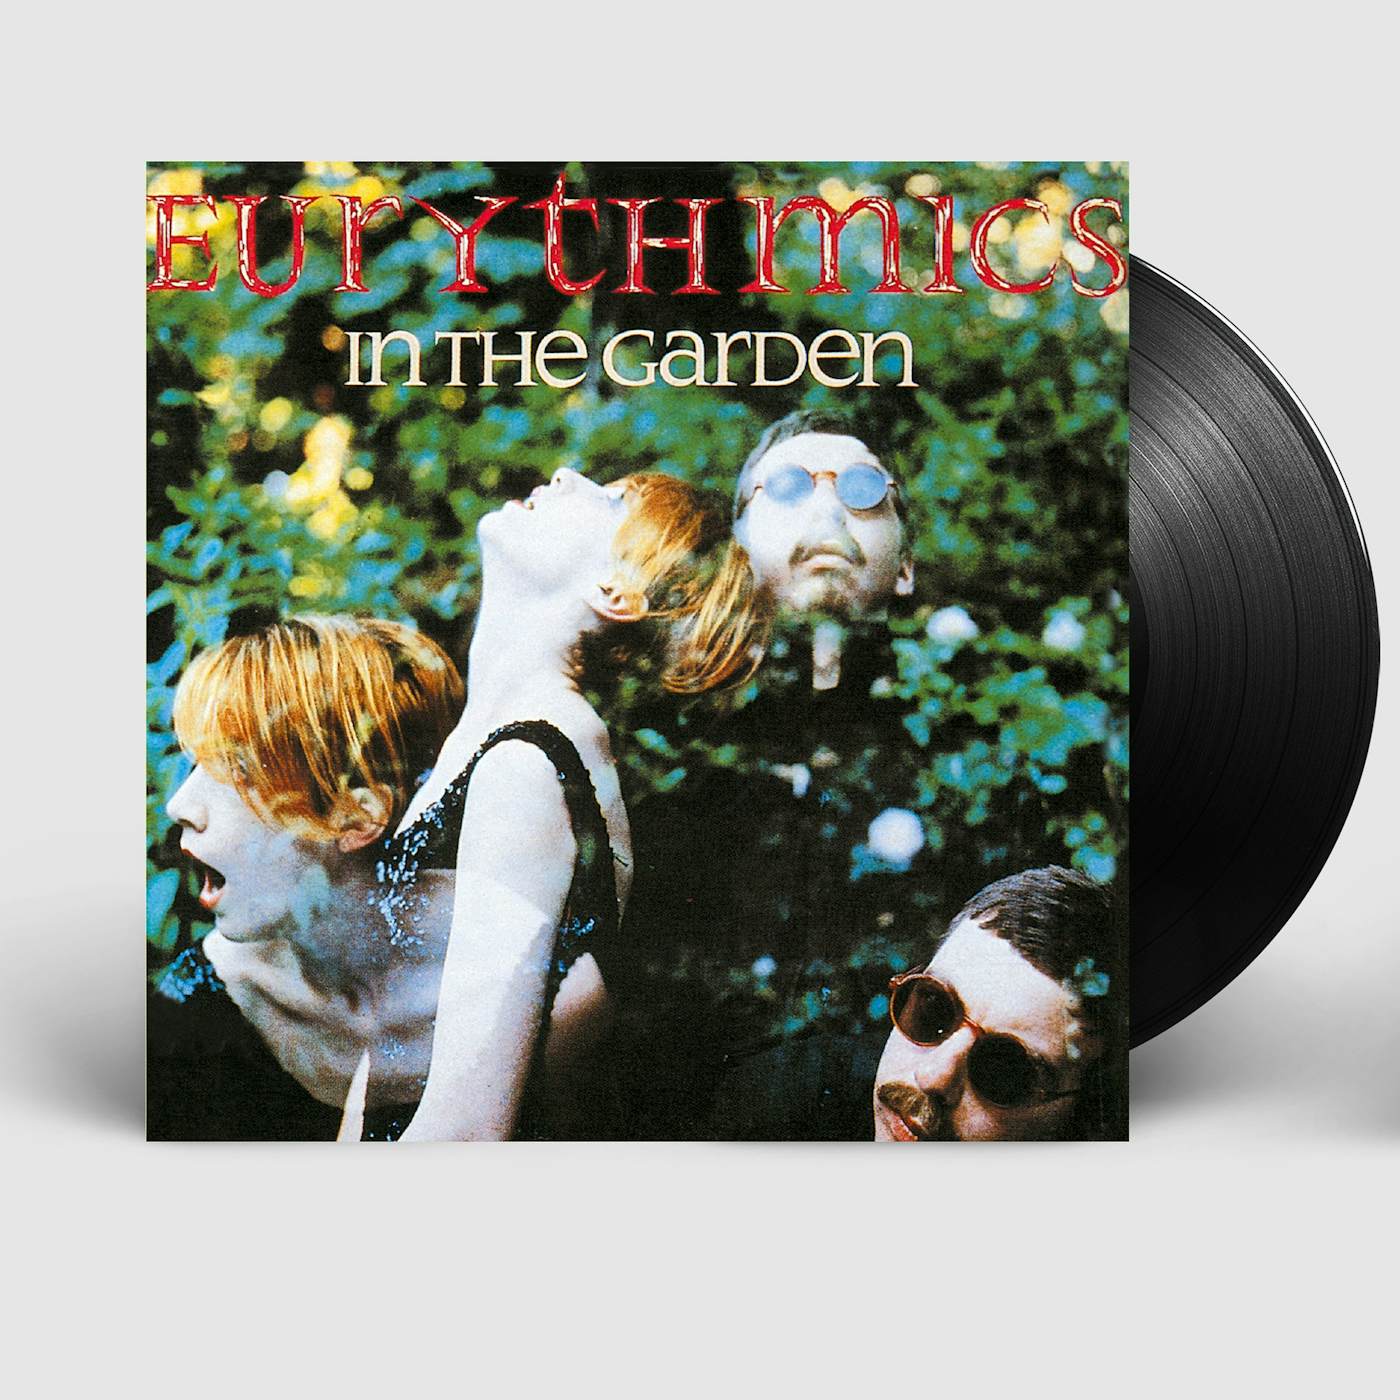 Eurythmics IN THE GARDEN LP (Vinyl)